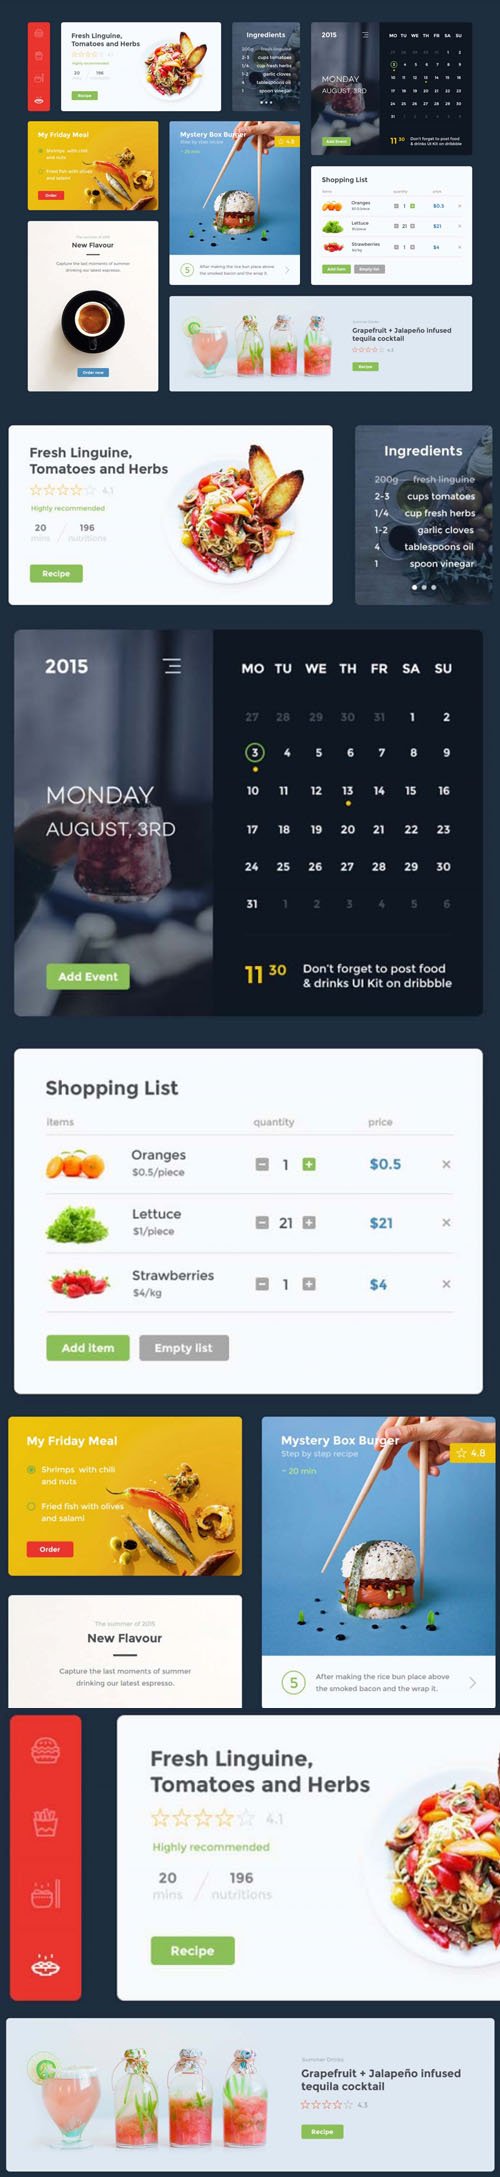 Food & Drink UI Kit PSD/SKETCH Template